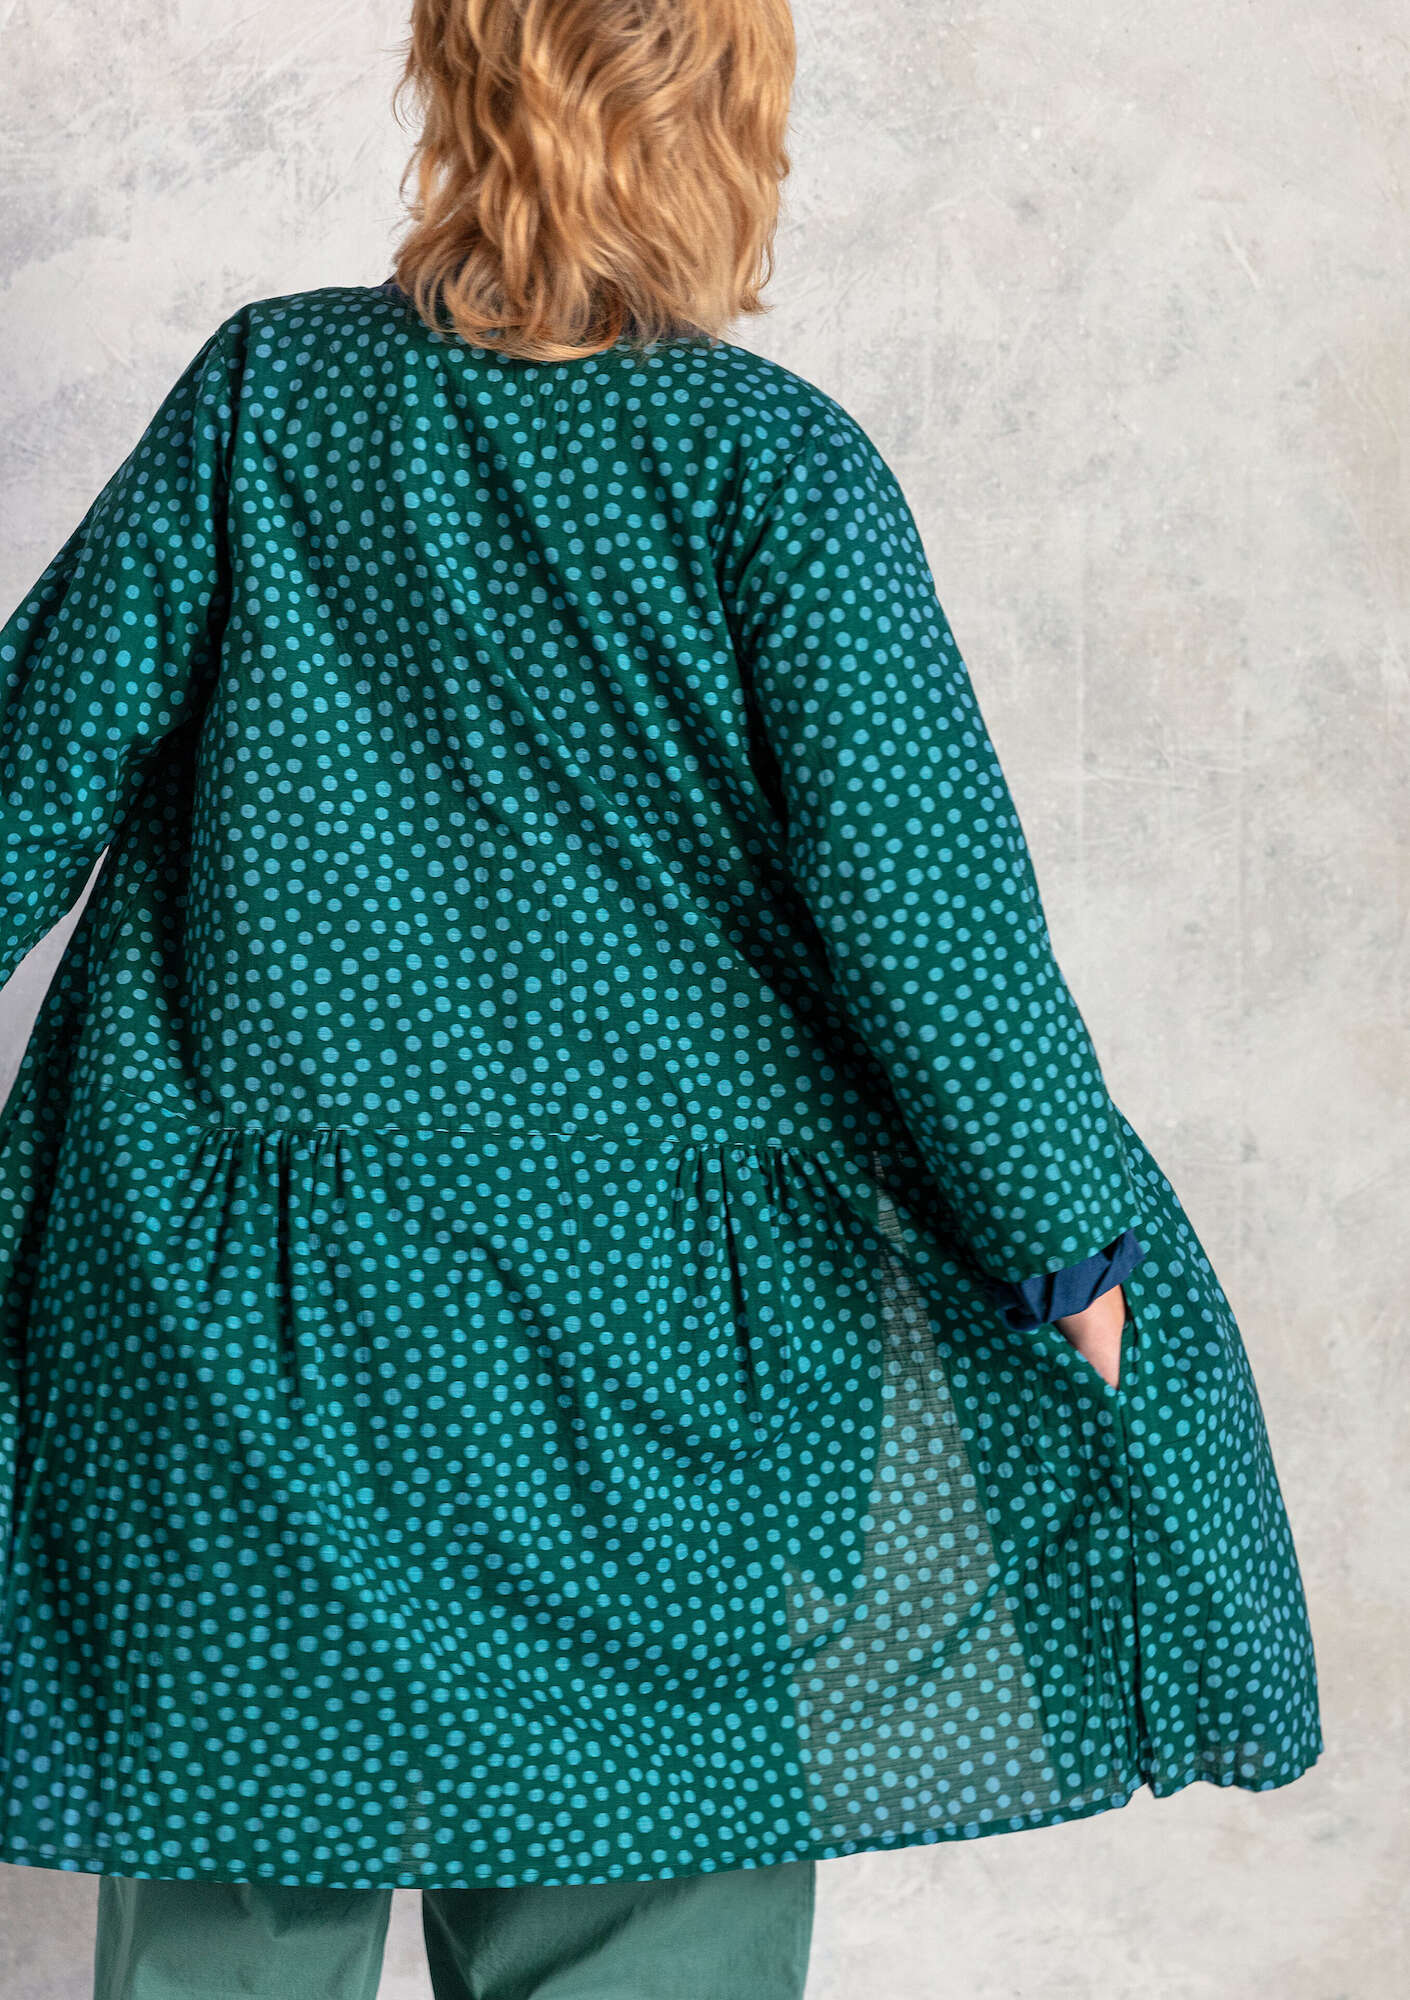 Vevd kjole «Alice» i økologisk bomull mørk grønn/mønstret thumbnail